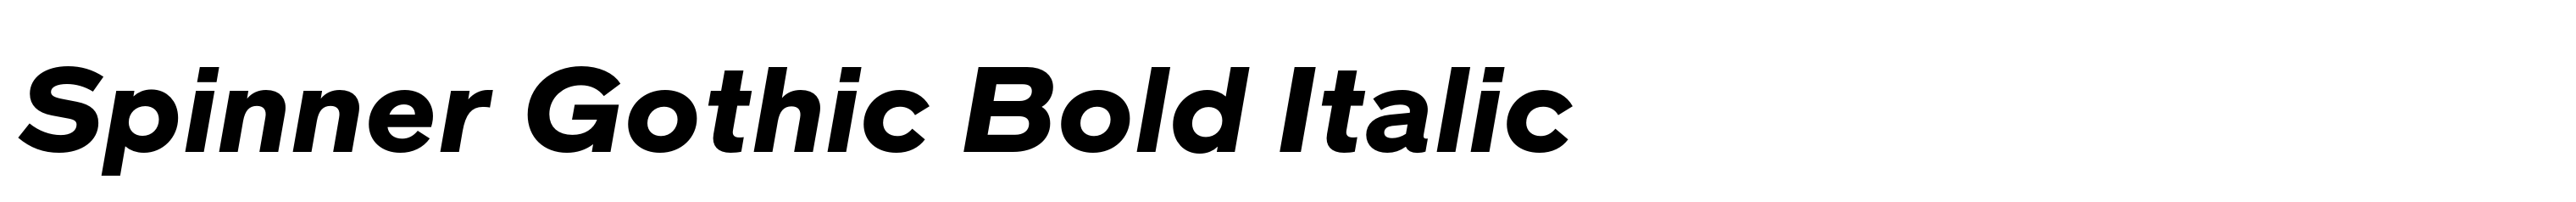 Spinner Gothic Bold Italic